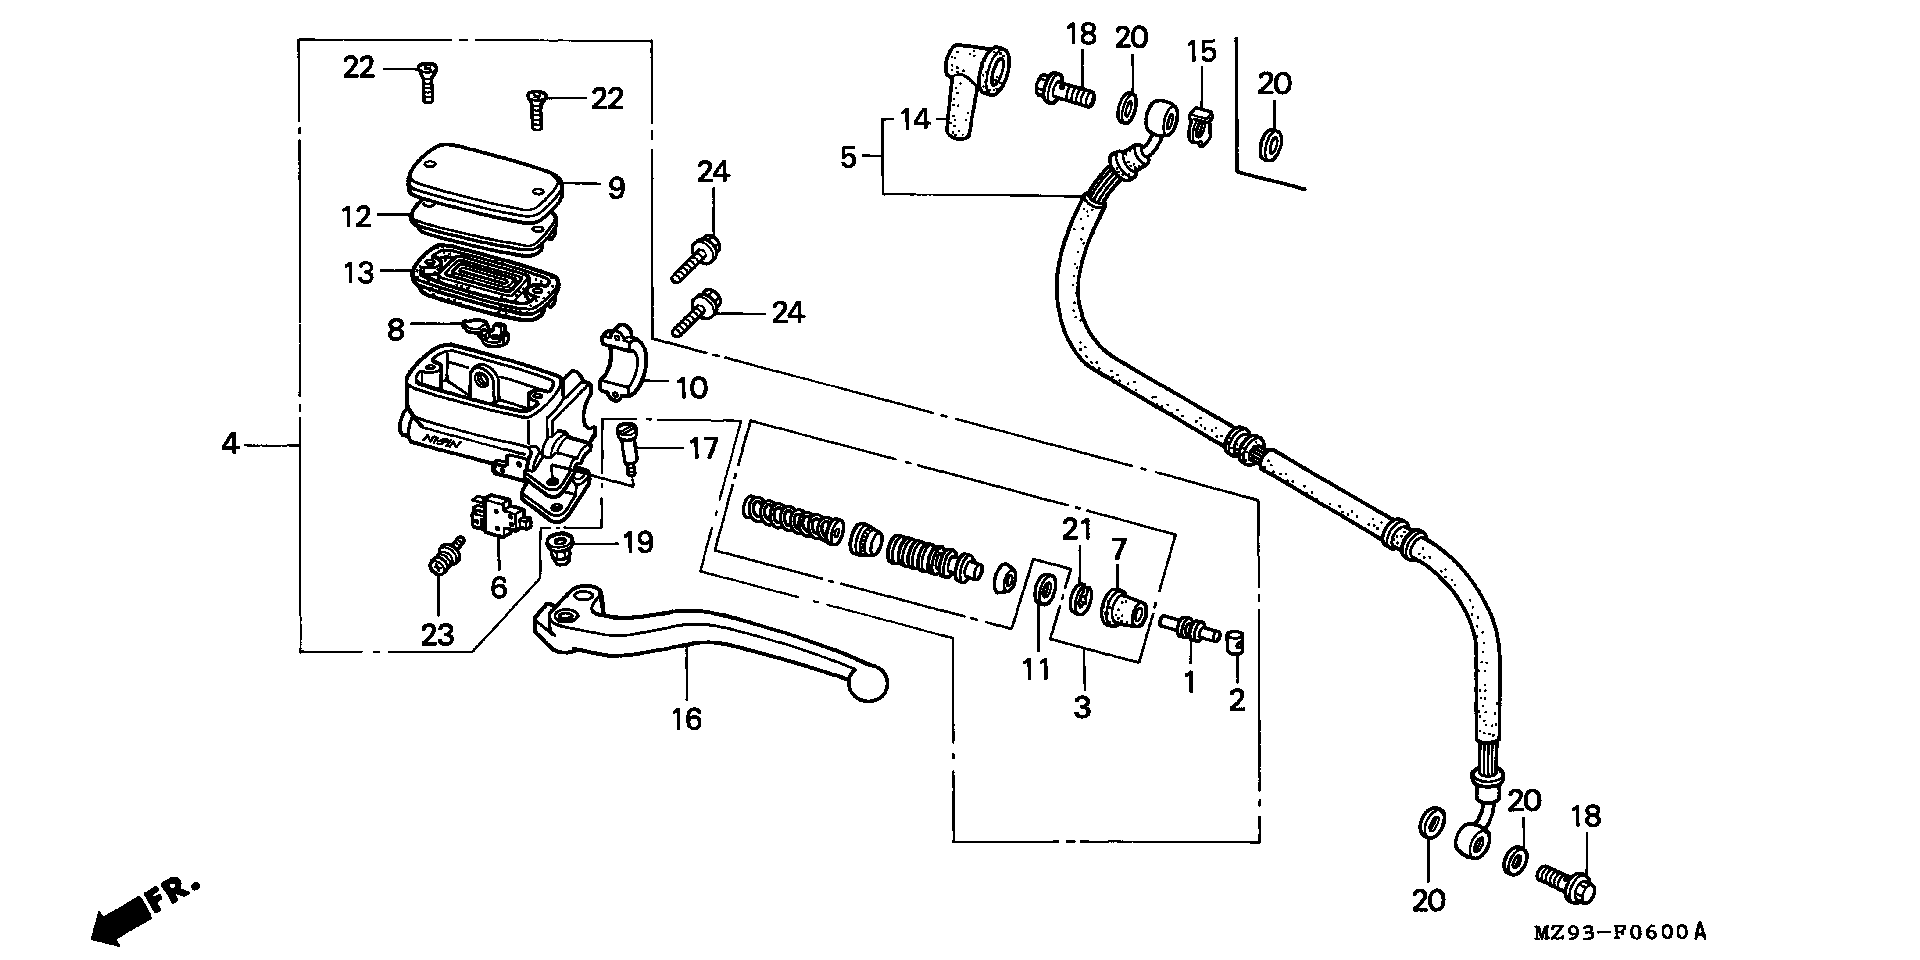 Parts fiche Clutch Master Cylinder ST1100